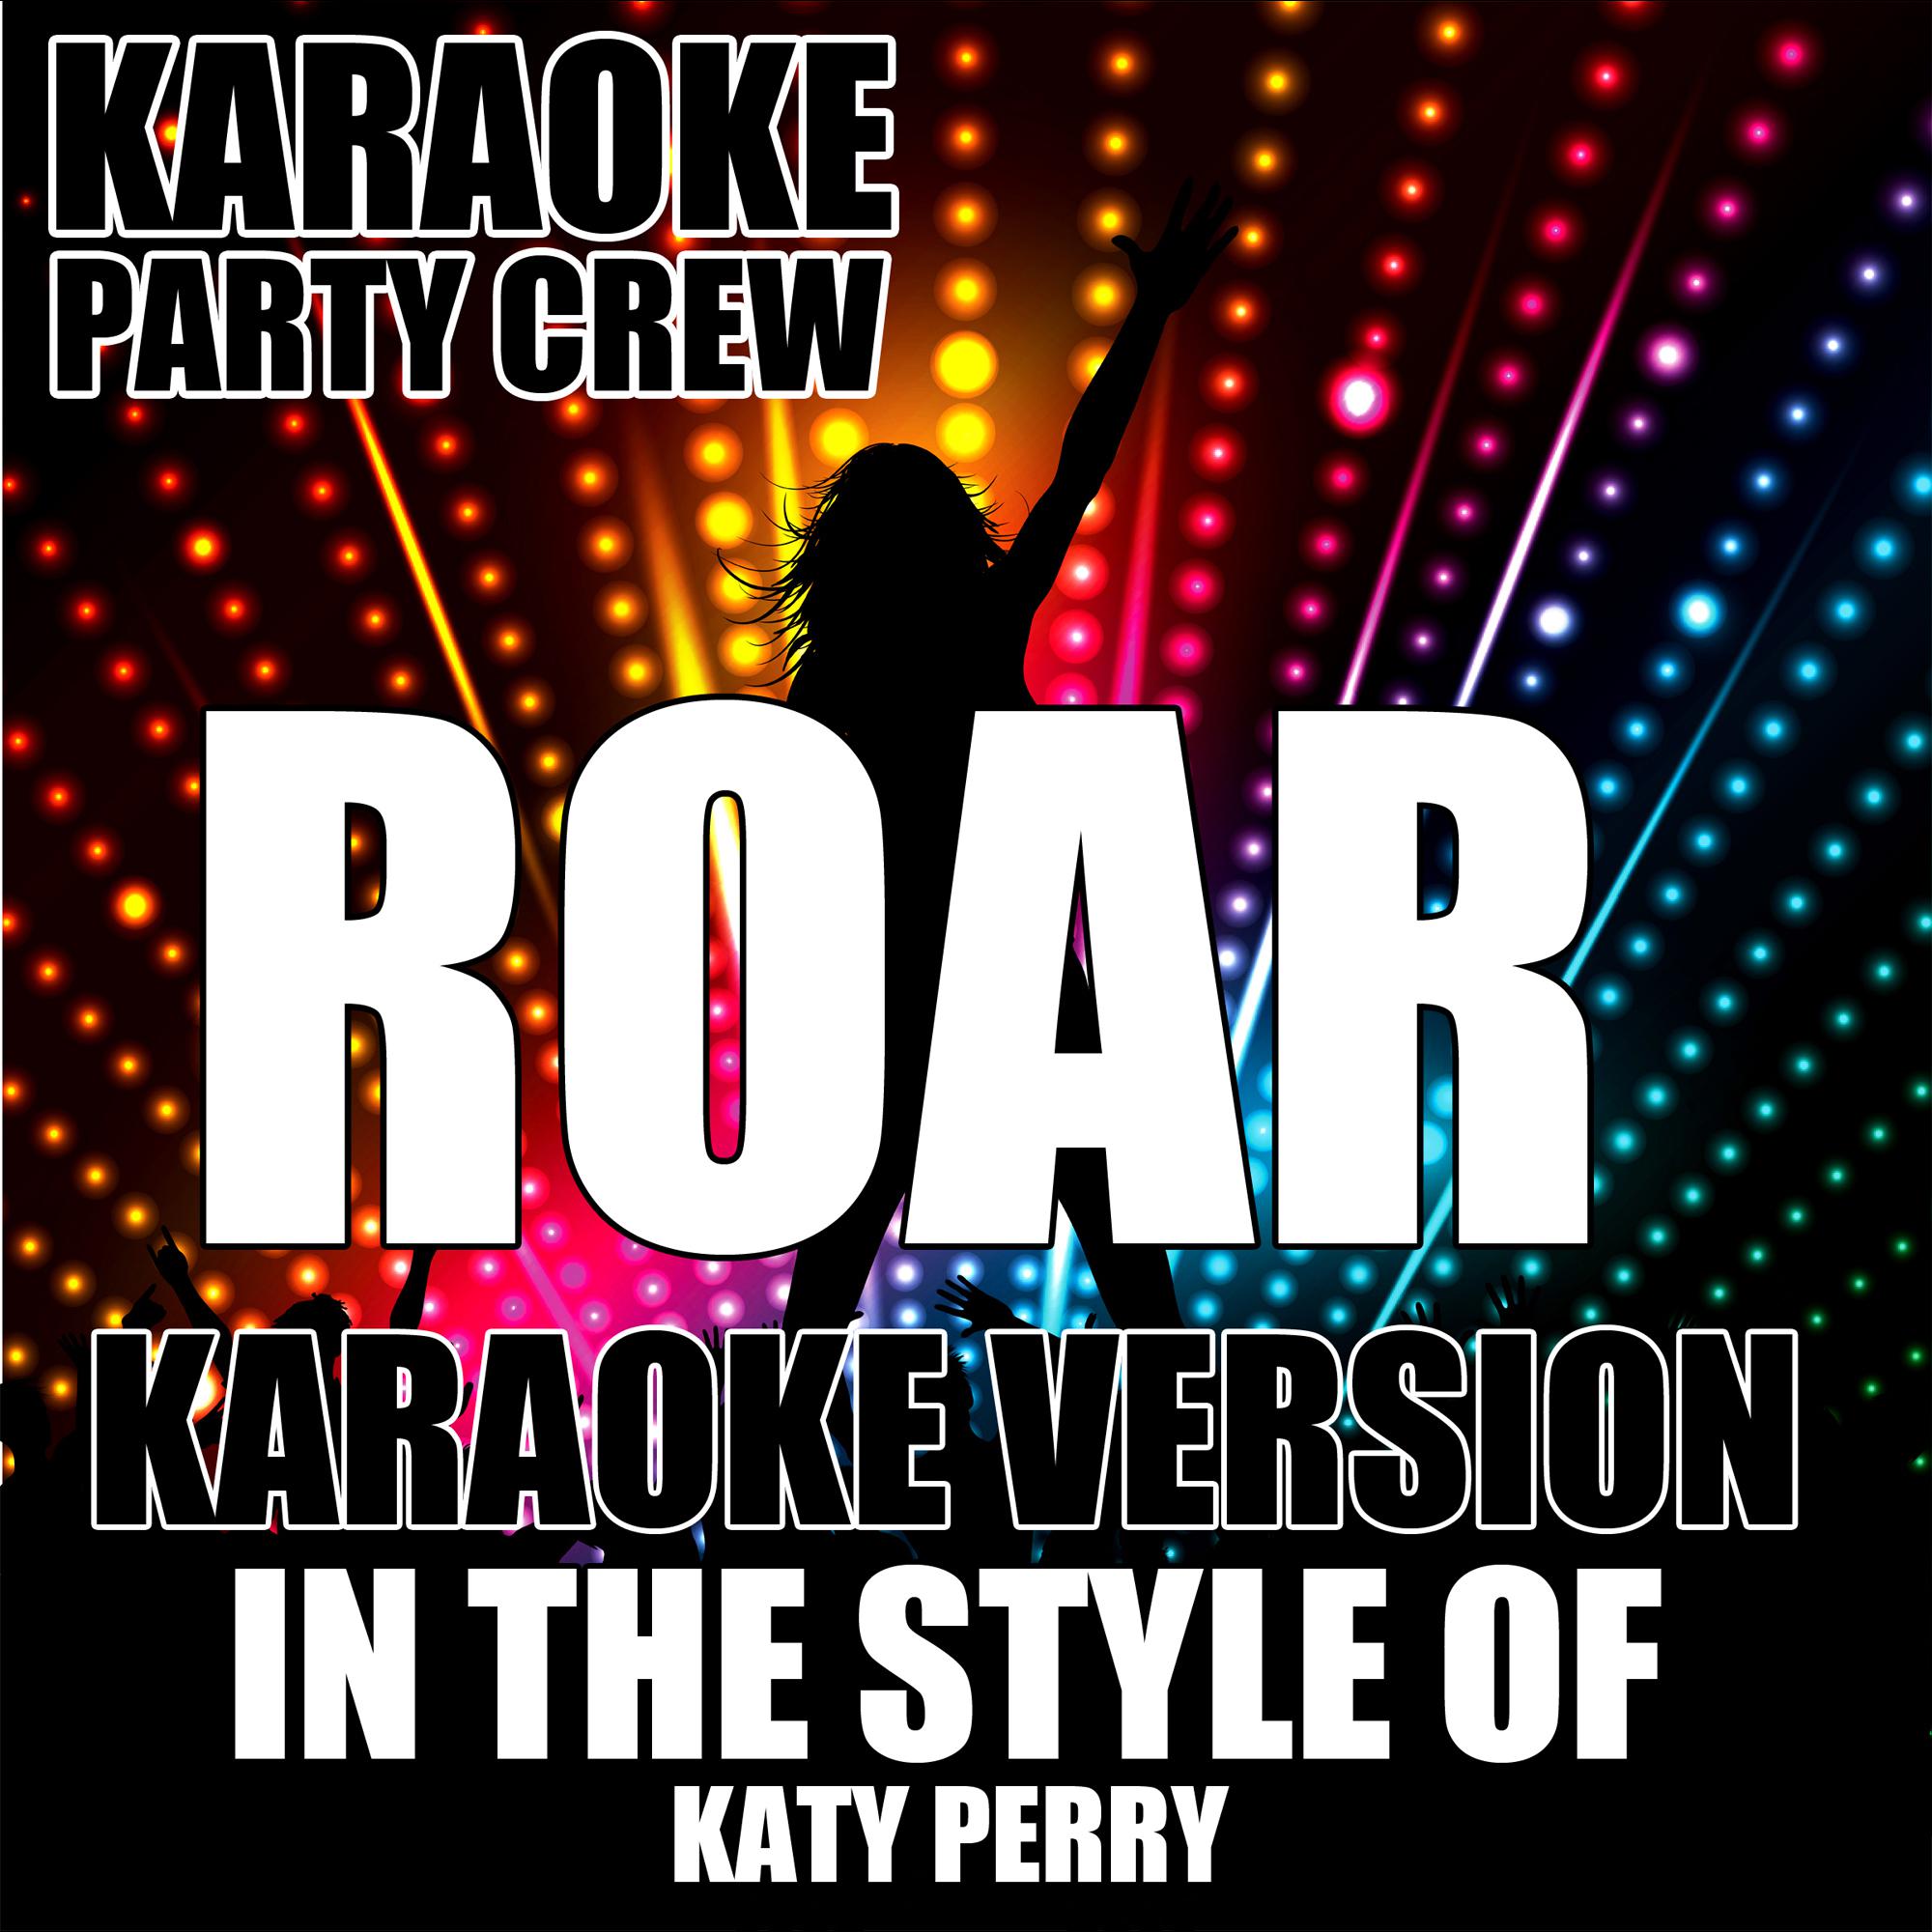 发 行 公 司.看 见 音 乐. 播 放 收 藏 分 享 下 载. Karaoke Party Crew. 歌 手. 发 行 时 间.2013-09-...